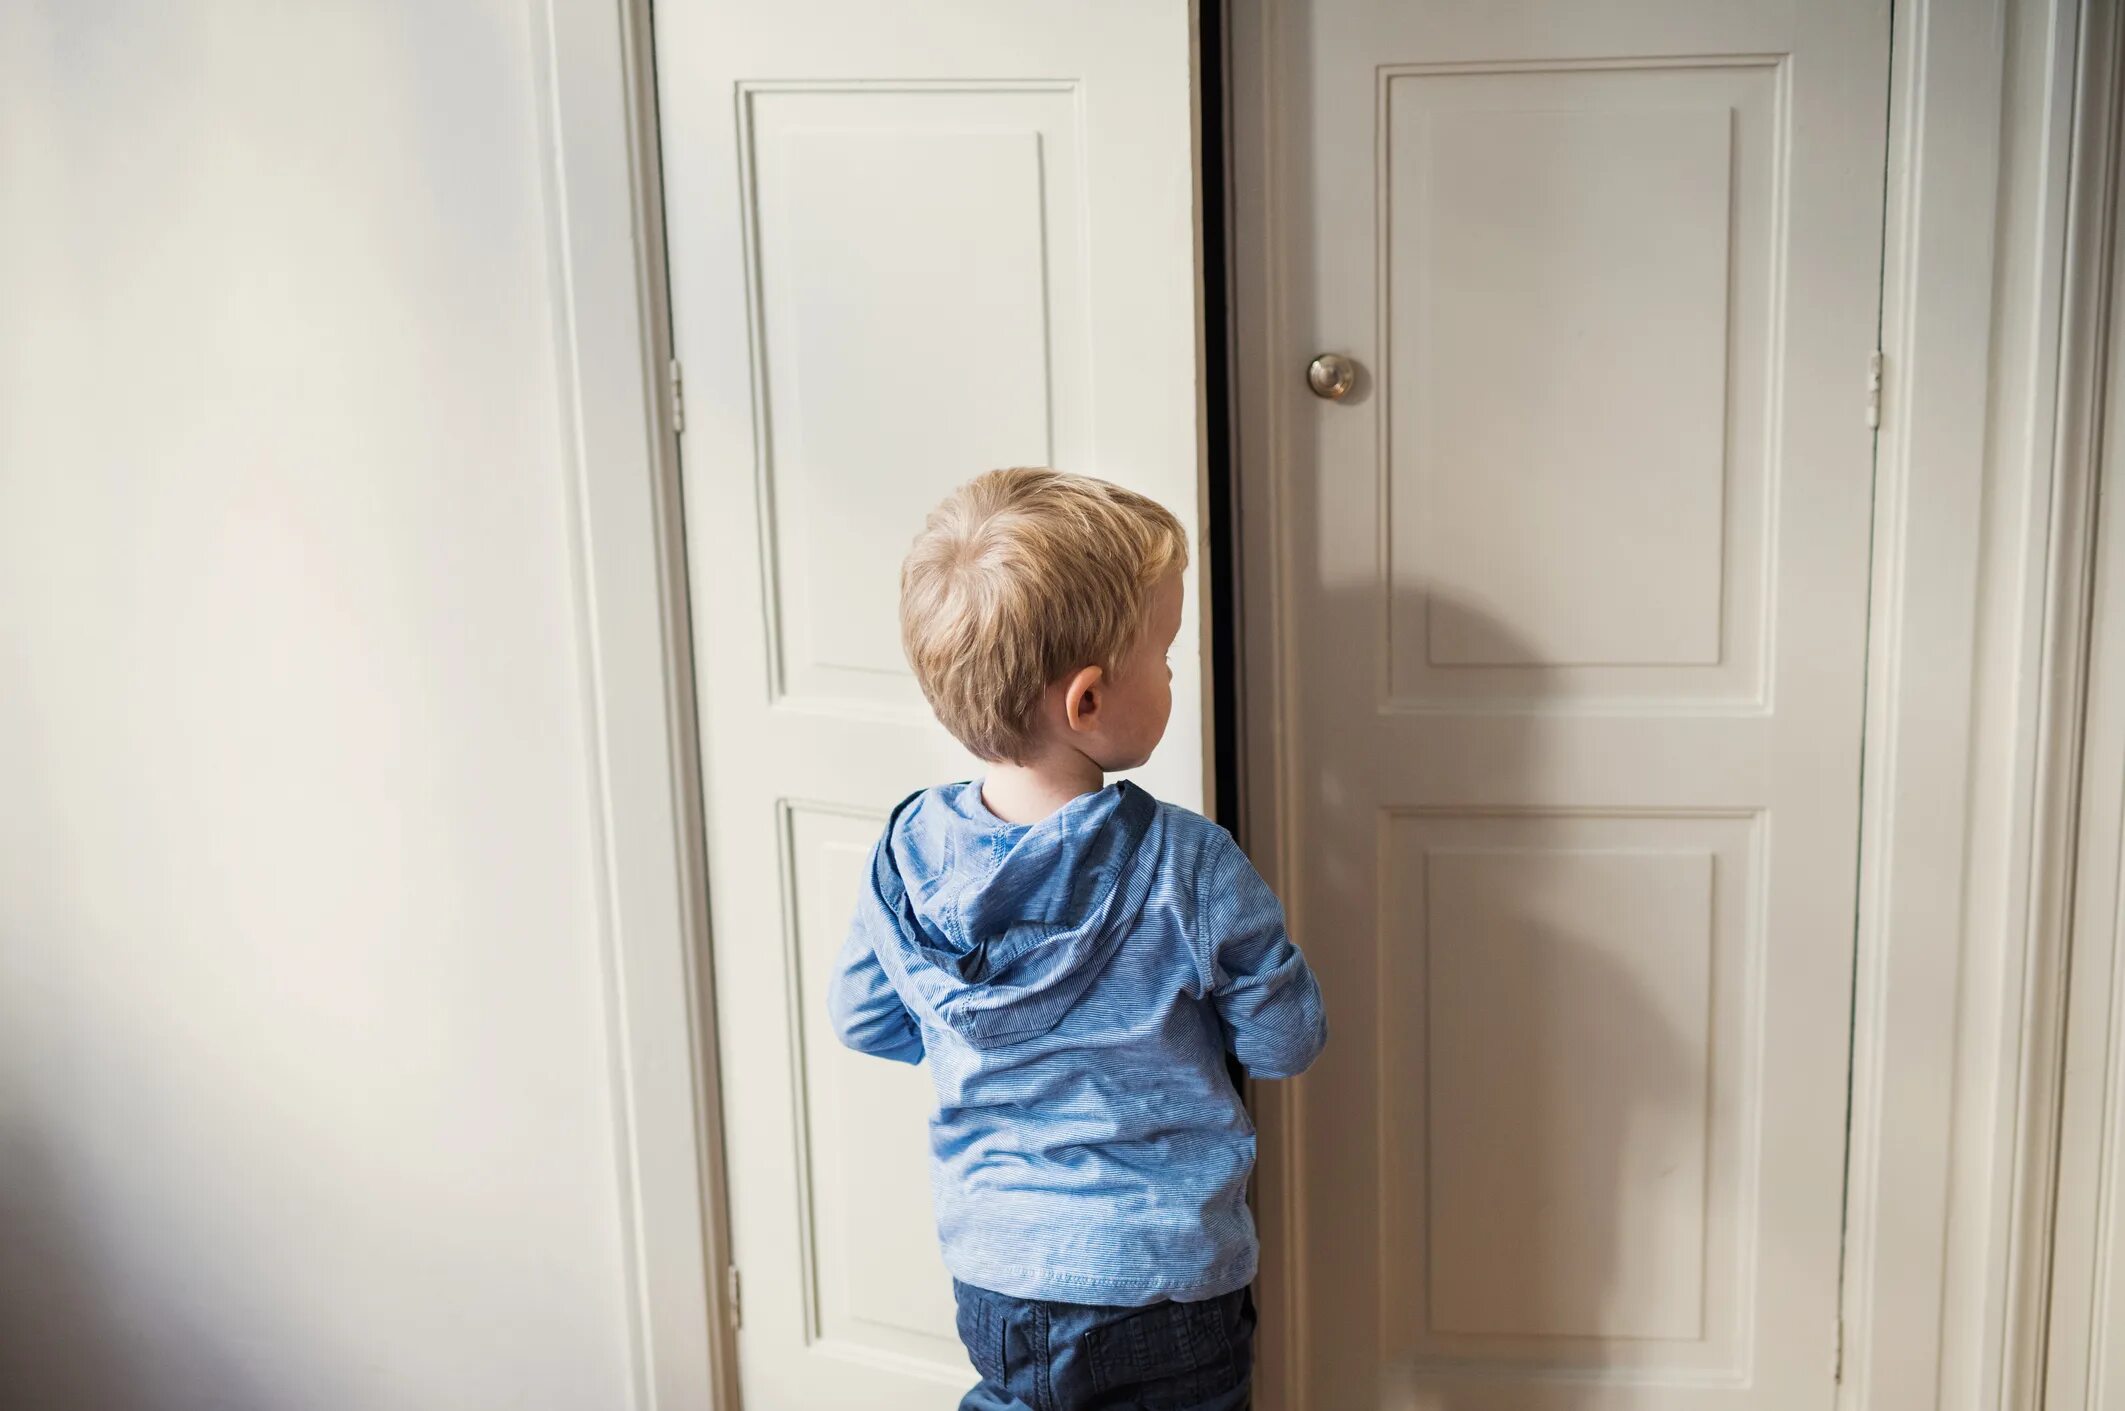 Мальчик и дверь открылась. Мальчик возле двери. Ребенок около двери. Ребенок в корзинке возле двери. Мальчик стоит возле двери.